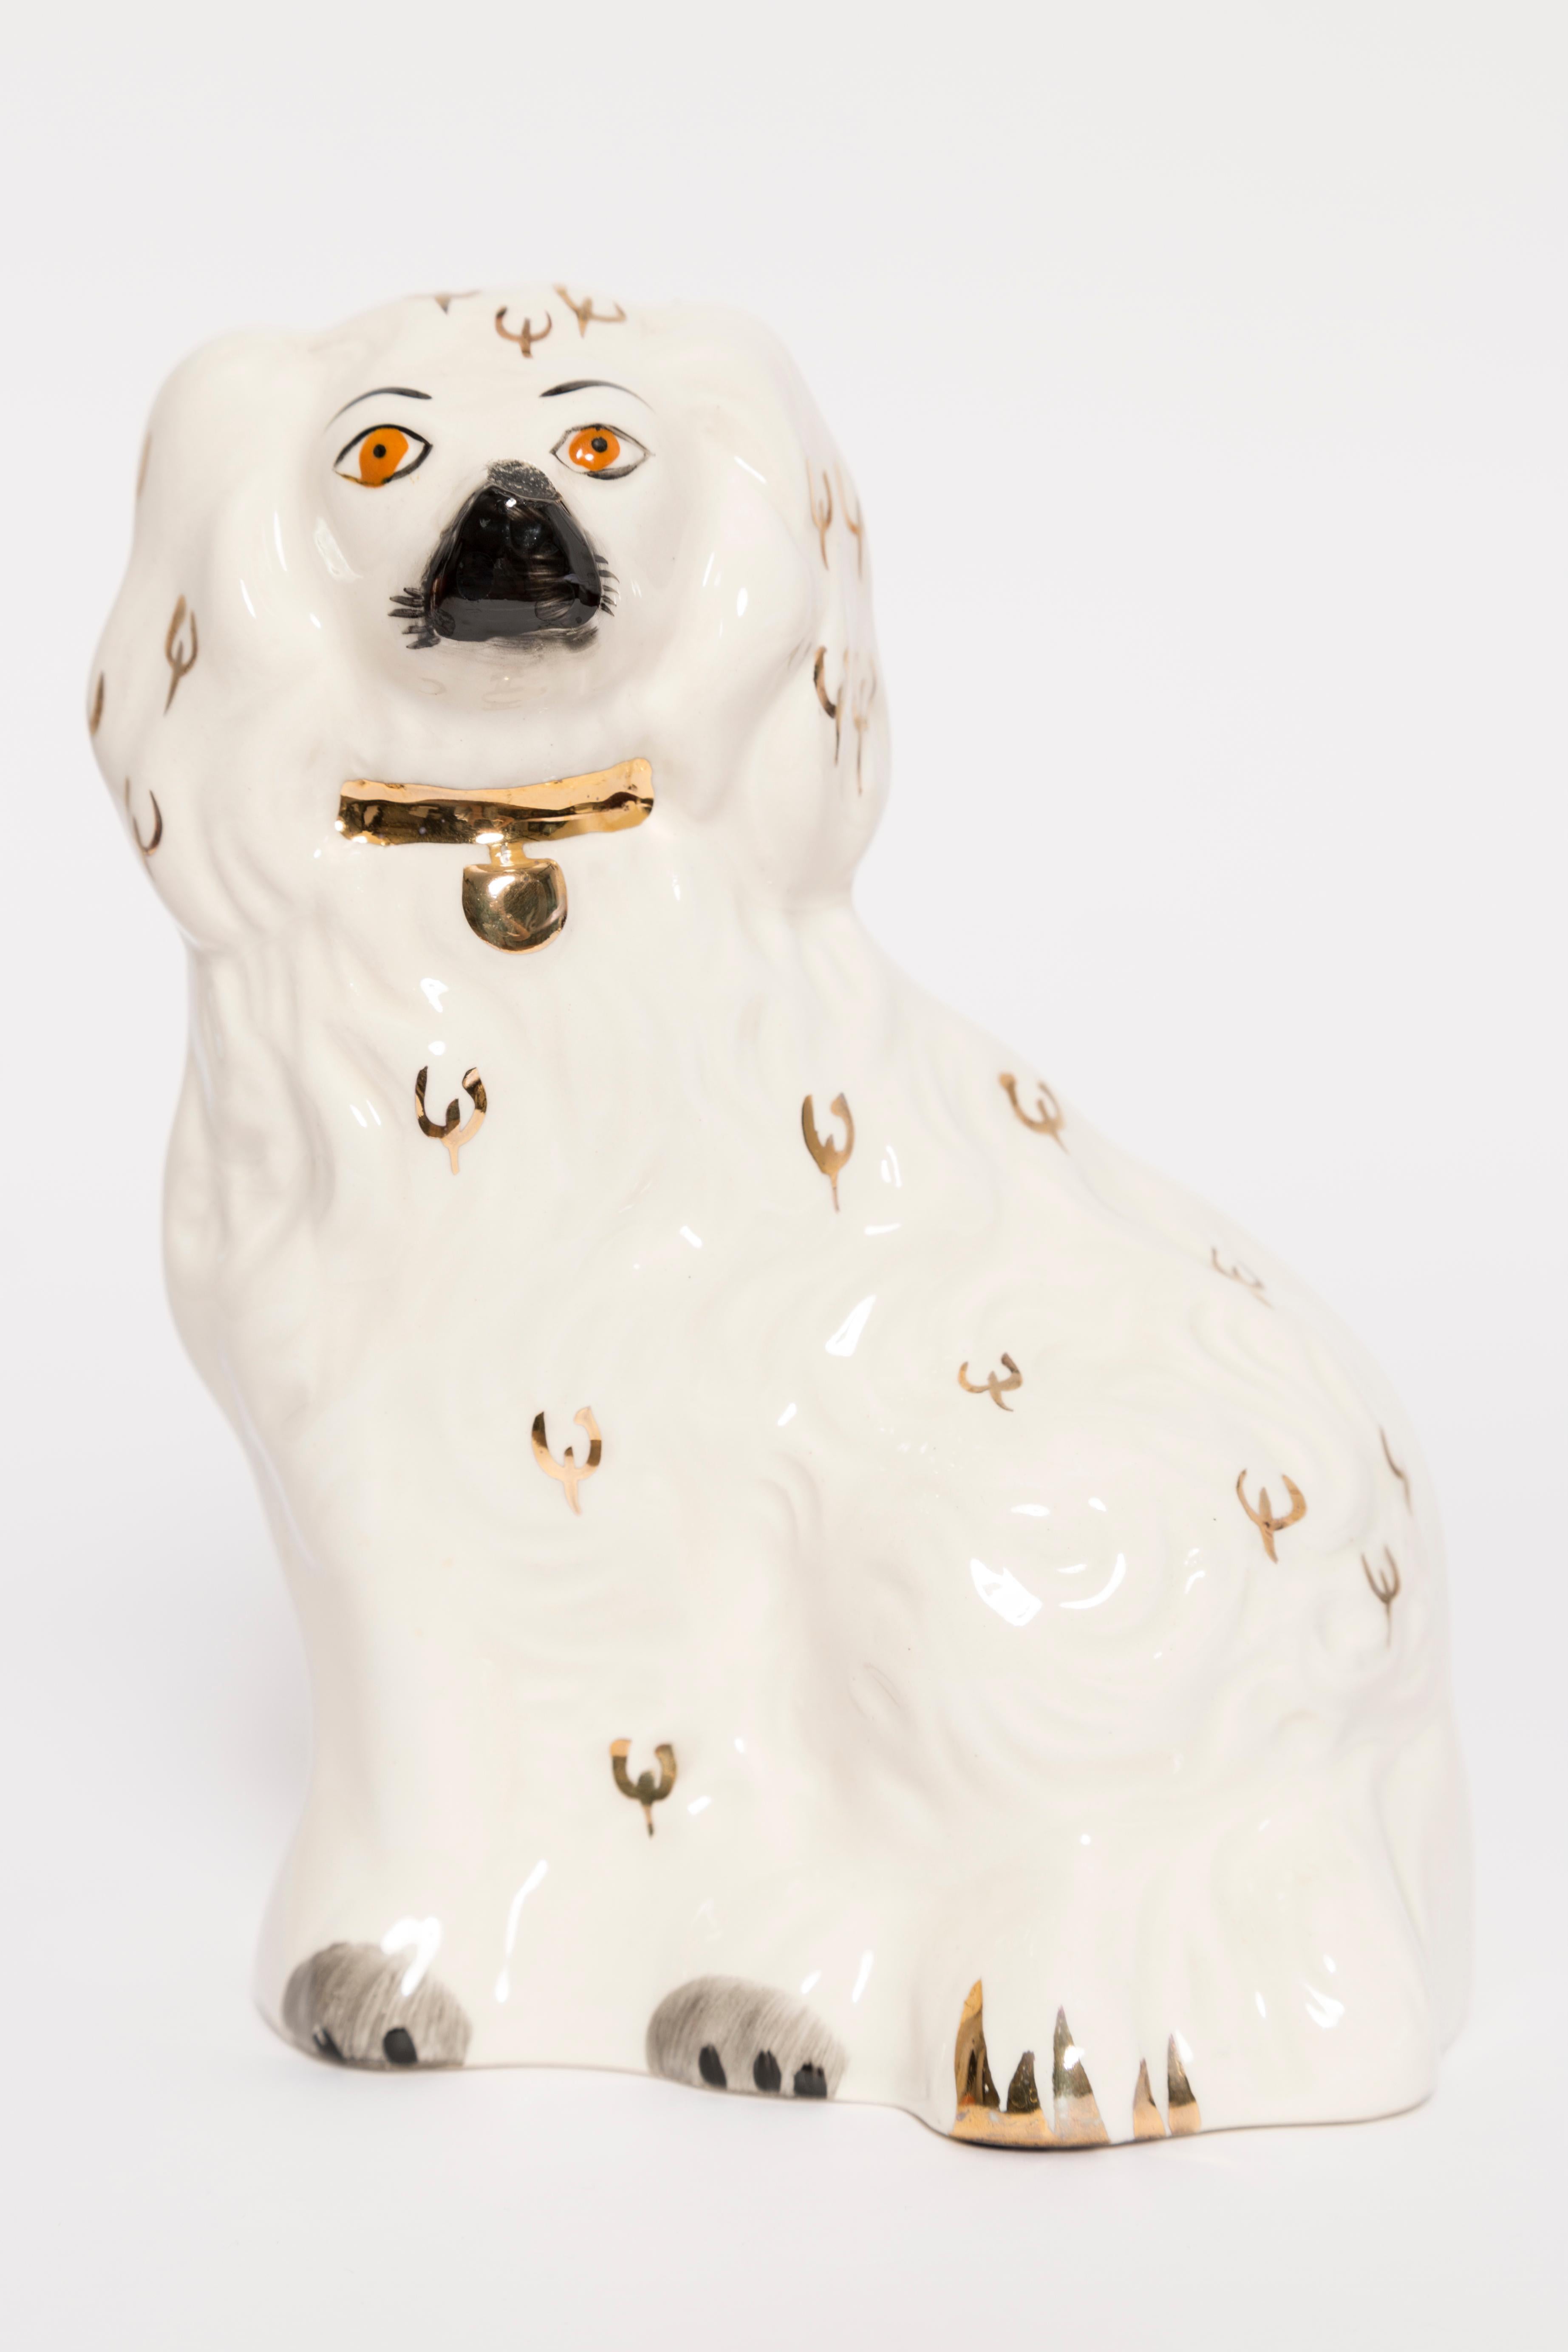 Bemalte Keramik, guter originaler Vintage-Zustand. Schöne und einzigartige dekorative Skulptur. Die Yorkshire Dog Sculpture wurde in den 1960er Jahren in Staffordshire, England, hergestellt.